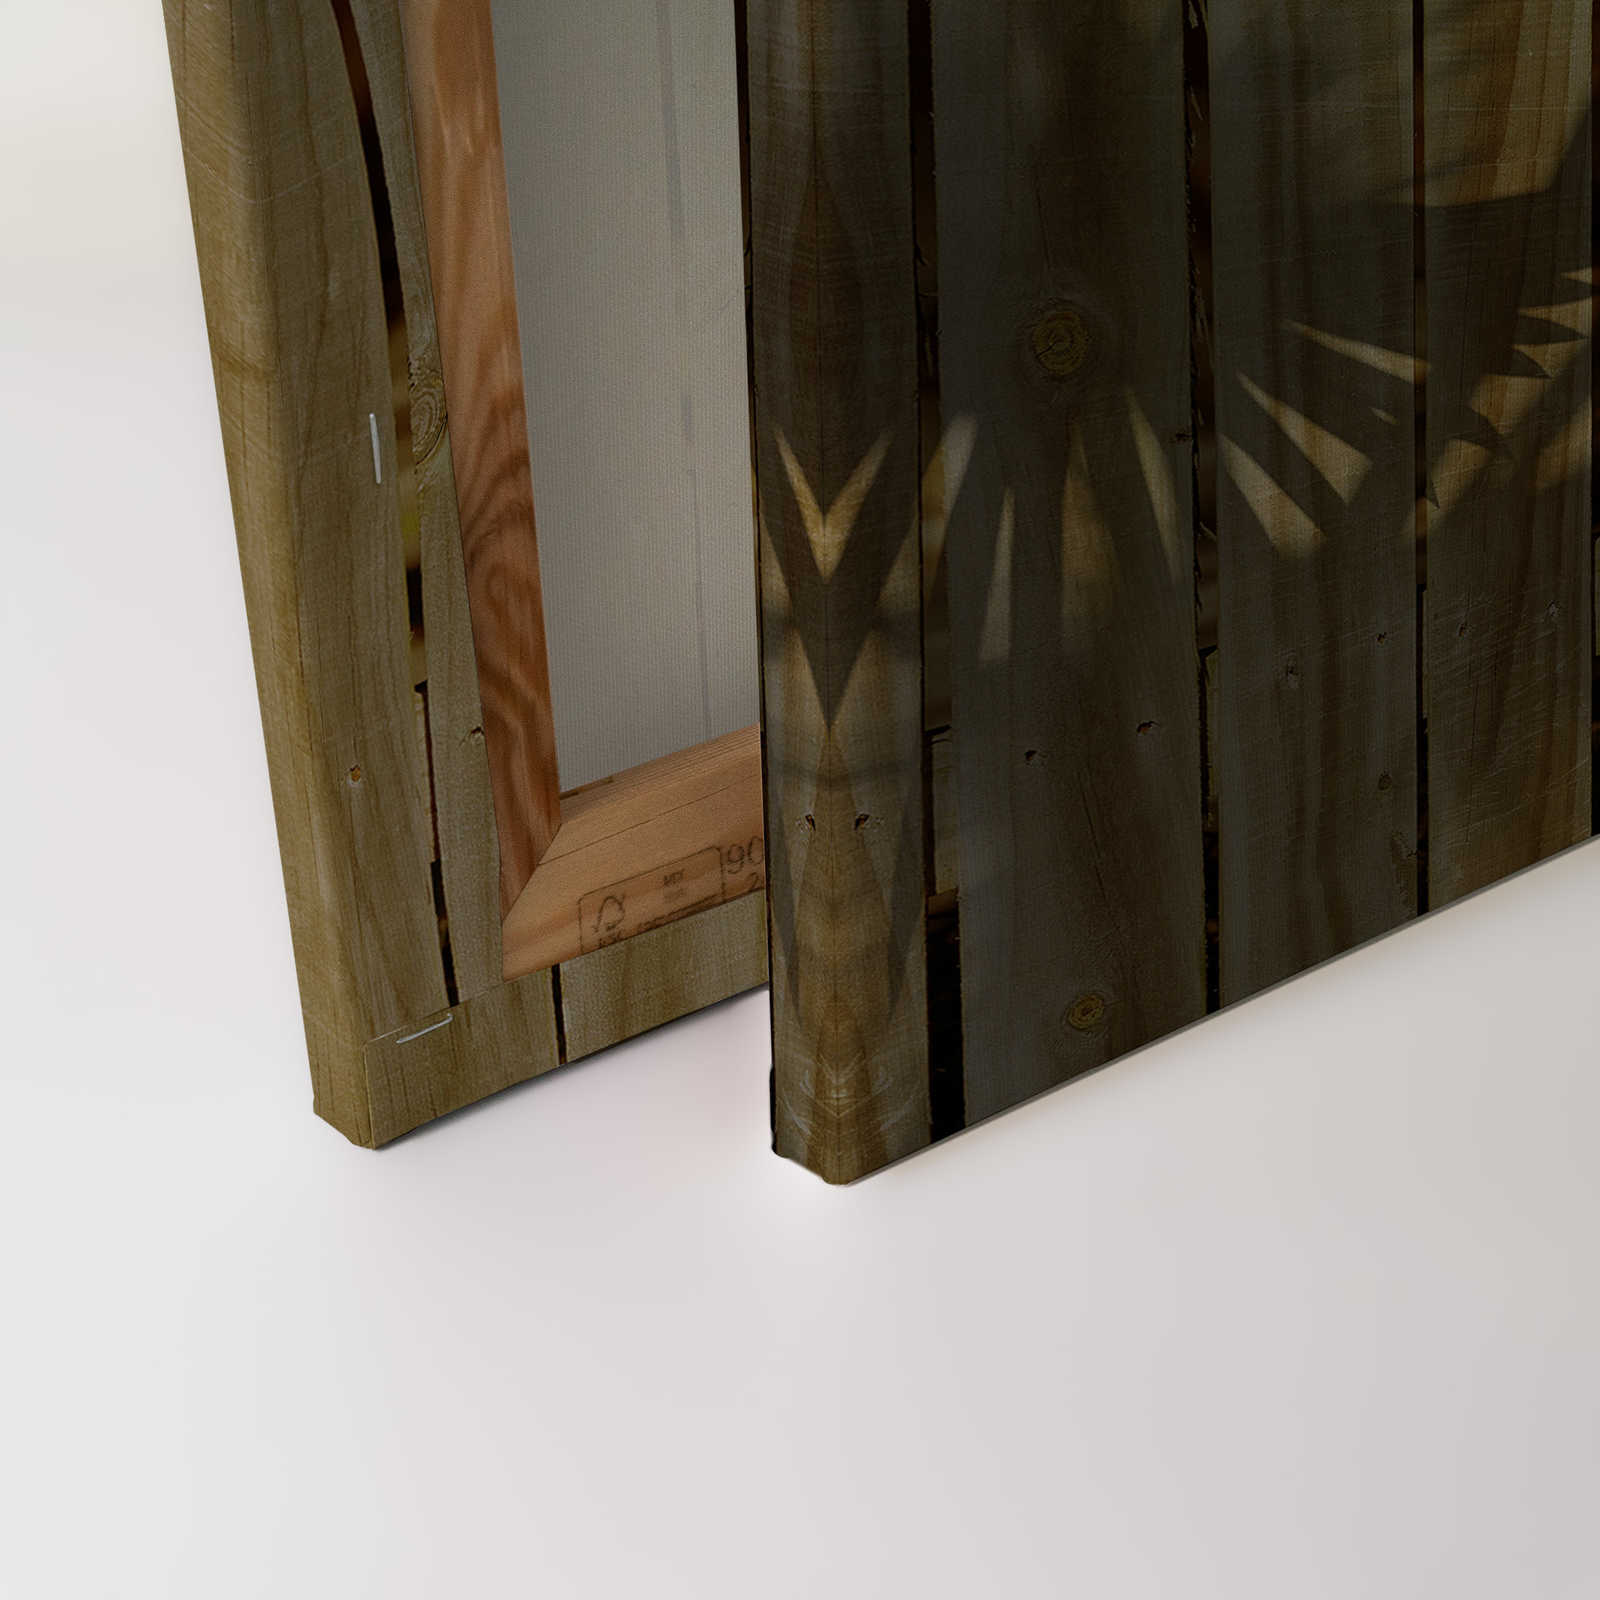             Leinwandbild mit Holzoptik und Palmblatt-Schatten – 0,90 m x 0,60 m
        